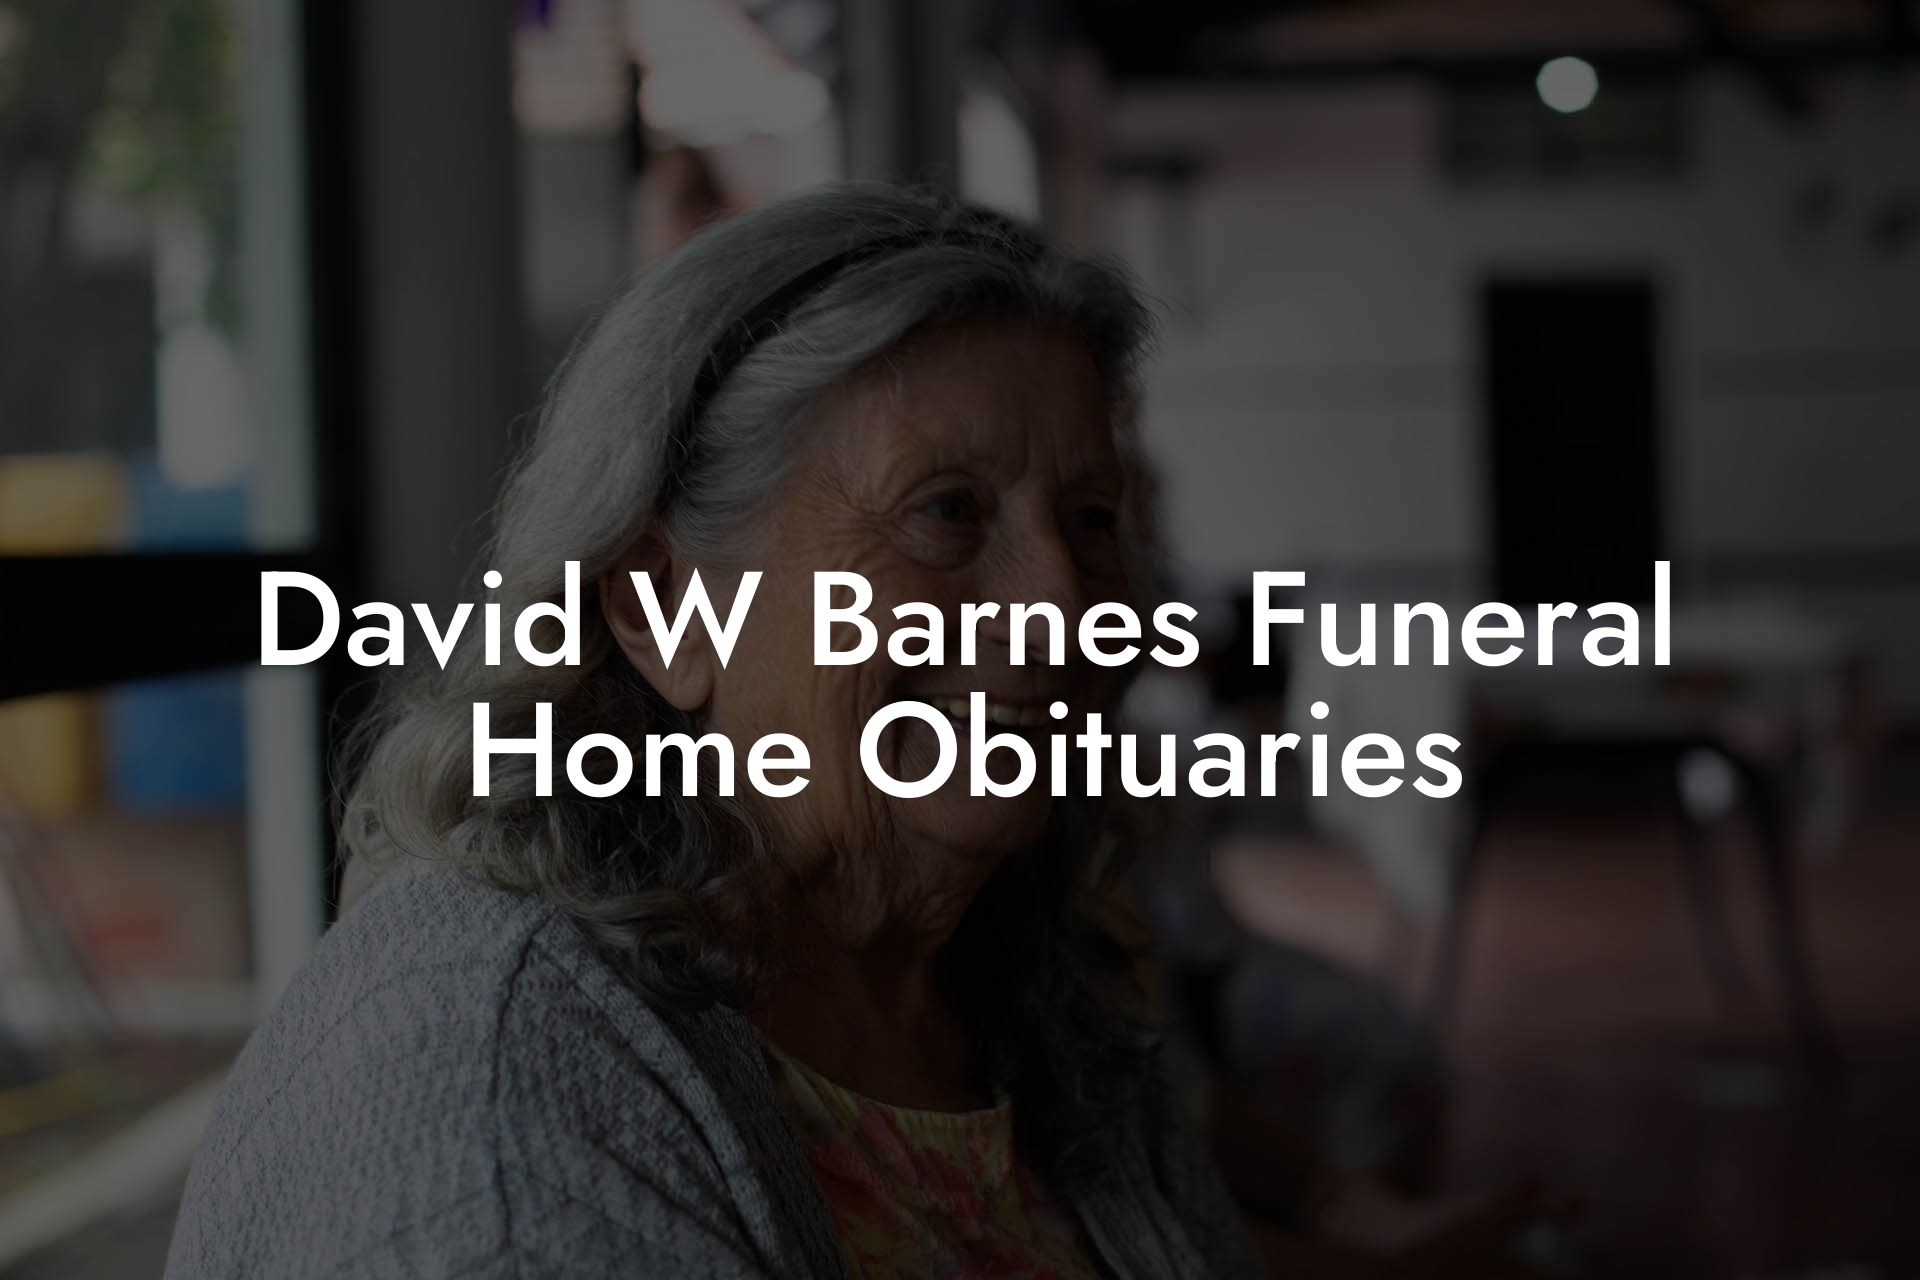 David W Barnes Funeral Home Obituaries